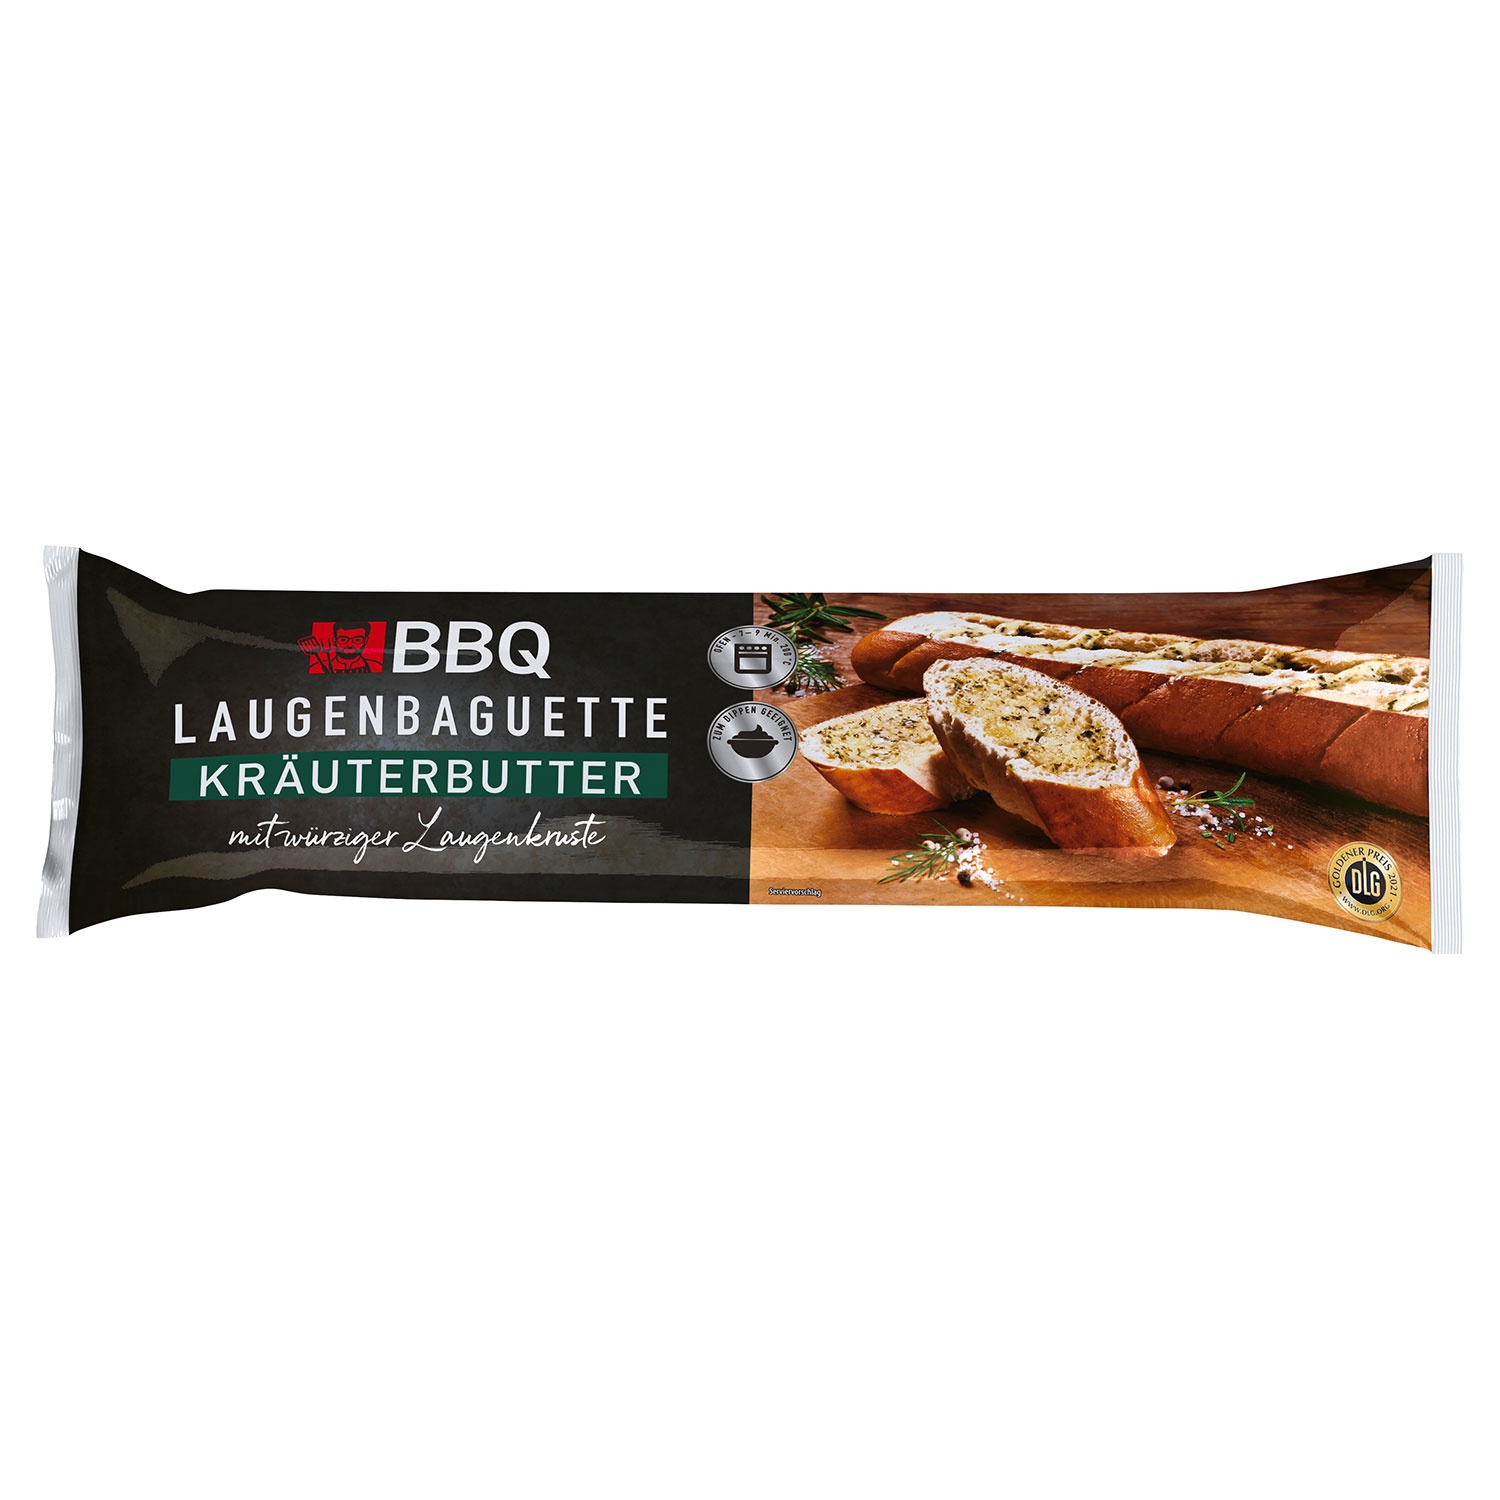 BBQ Landbaguette oder Laugenbaguette mit Kräuterbutter 175 g